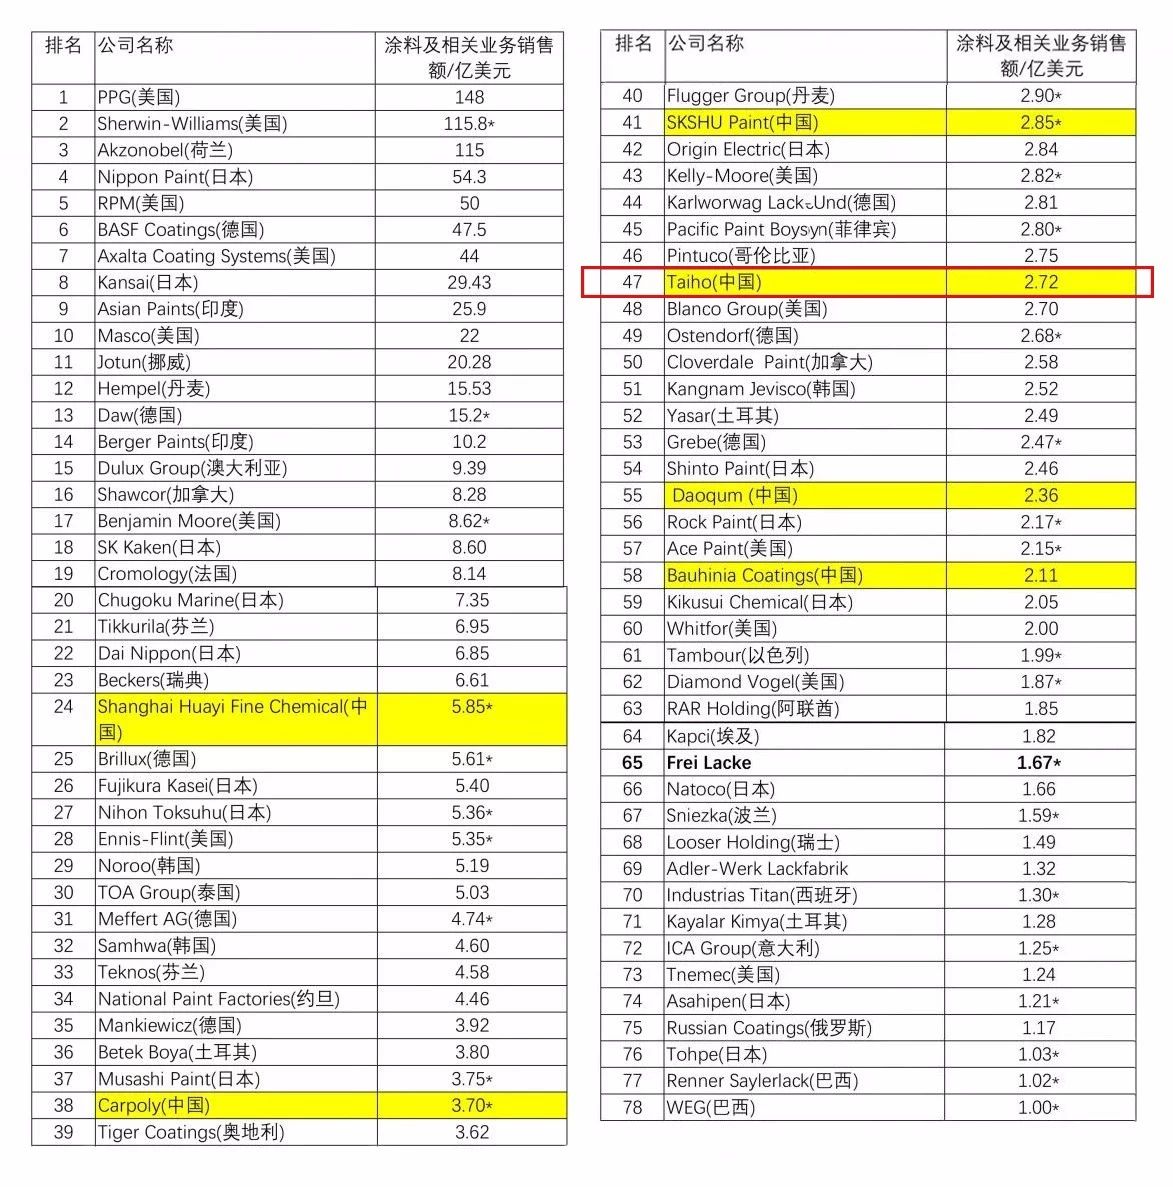 2018美国公告排行榜_2018中国大学排行榜报告公布,快看你的学校排第几